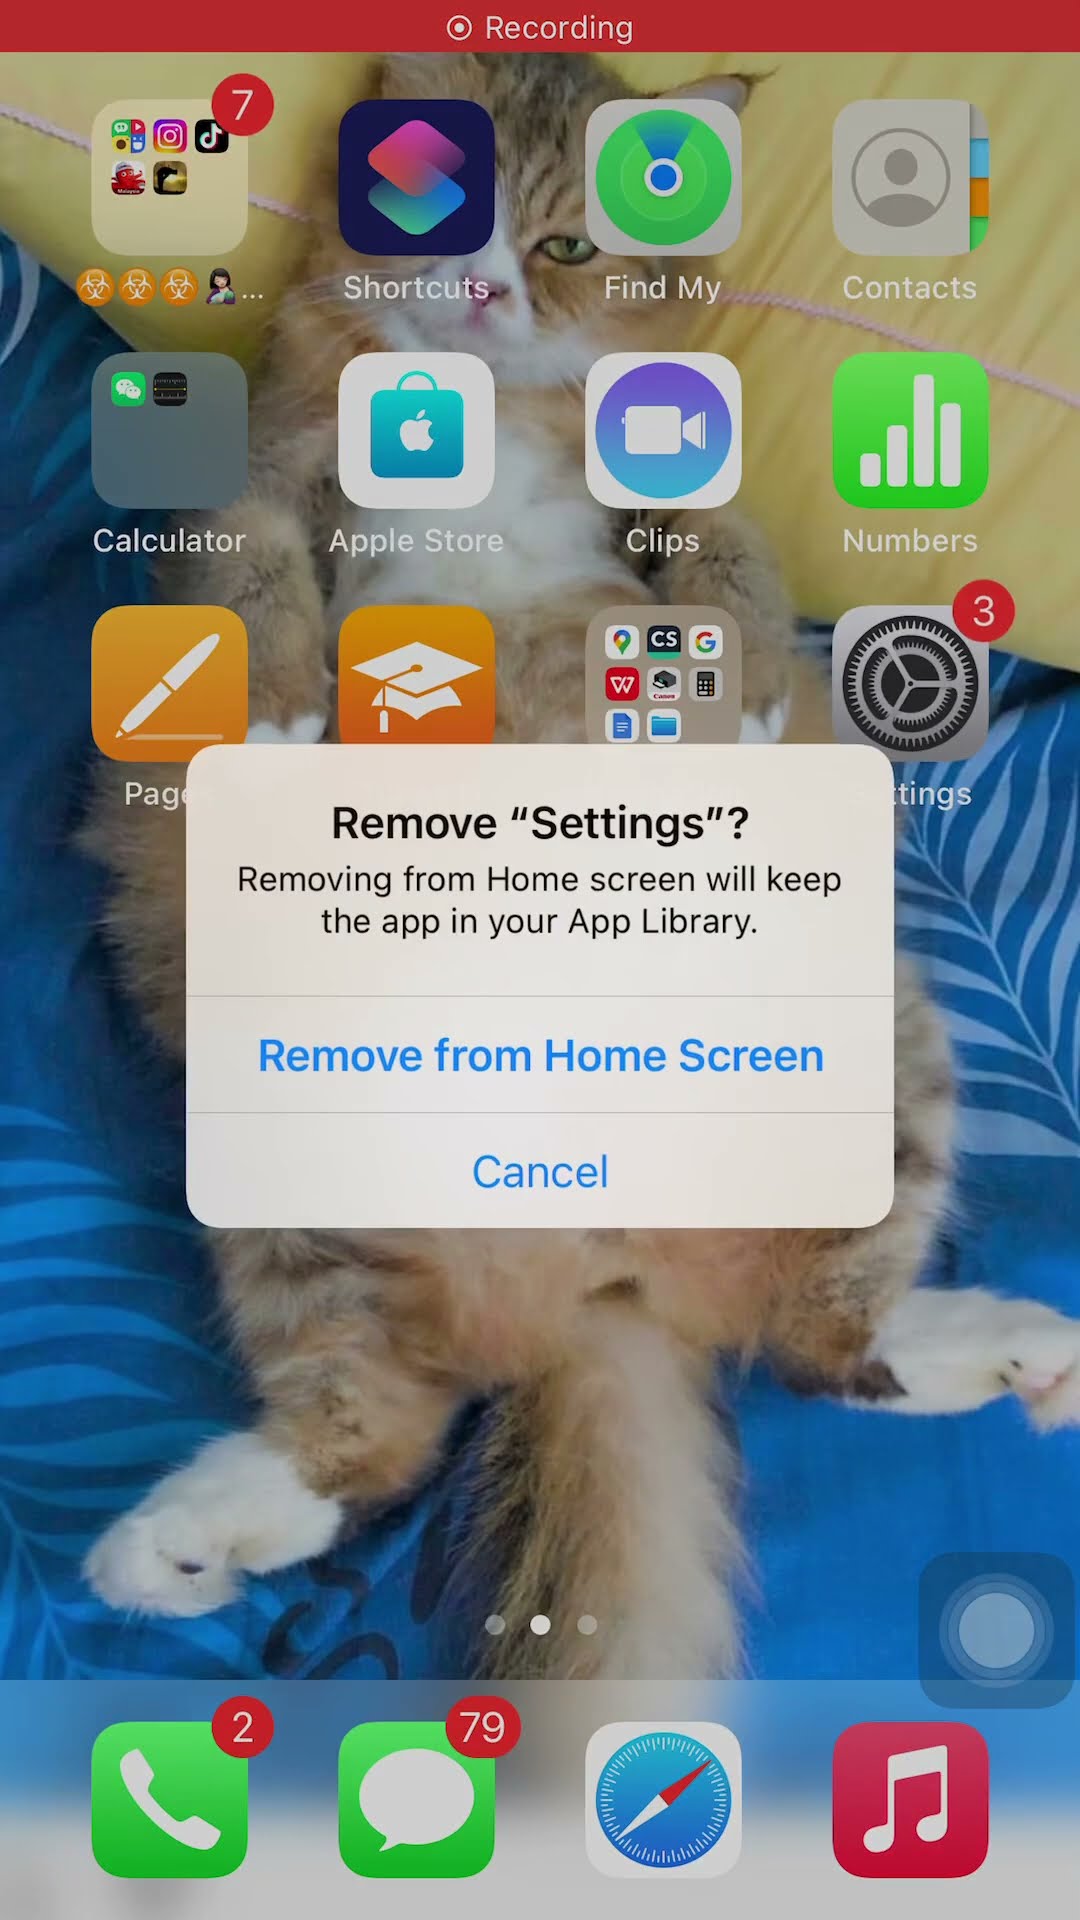 Never delete settings app...